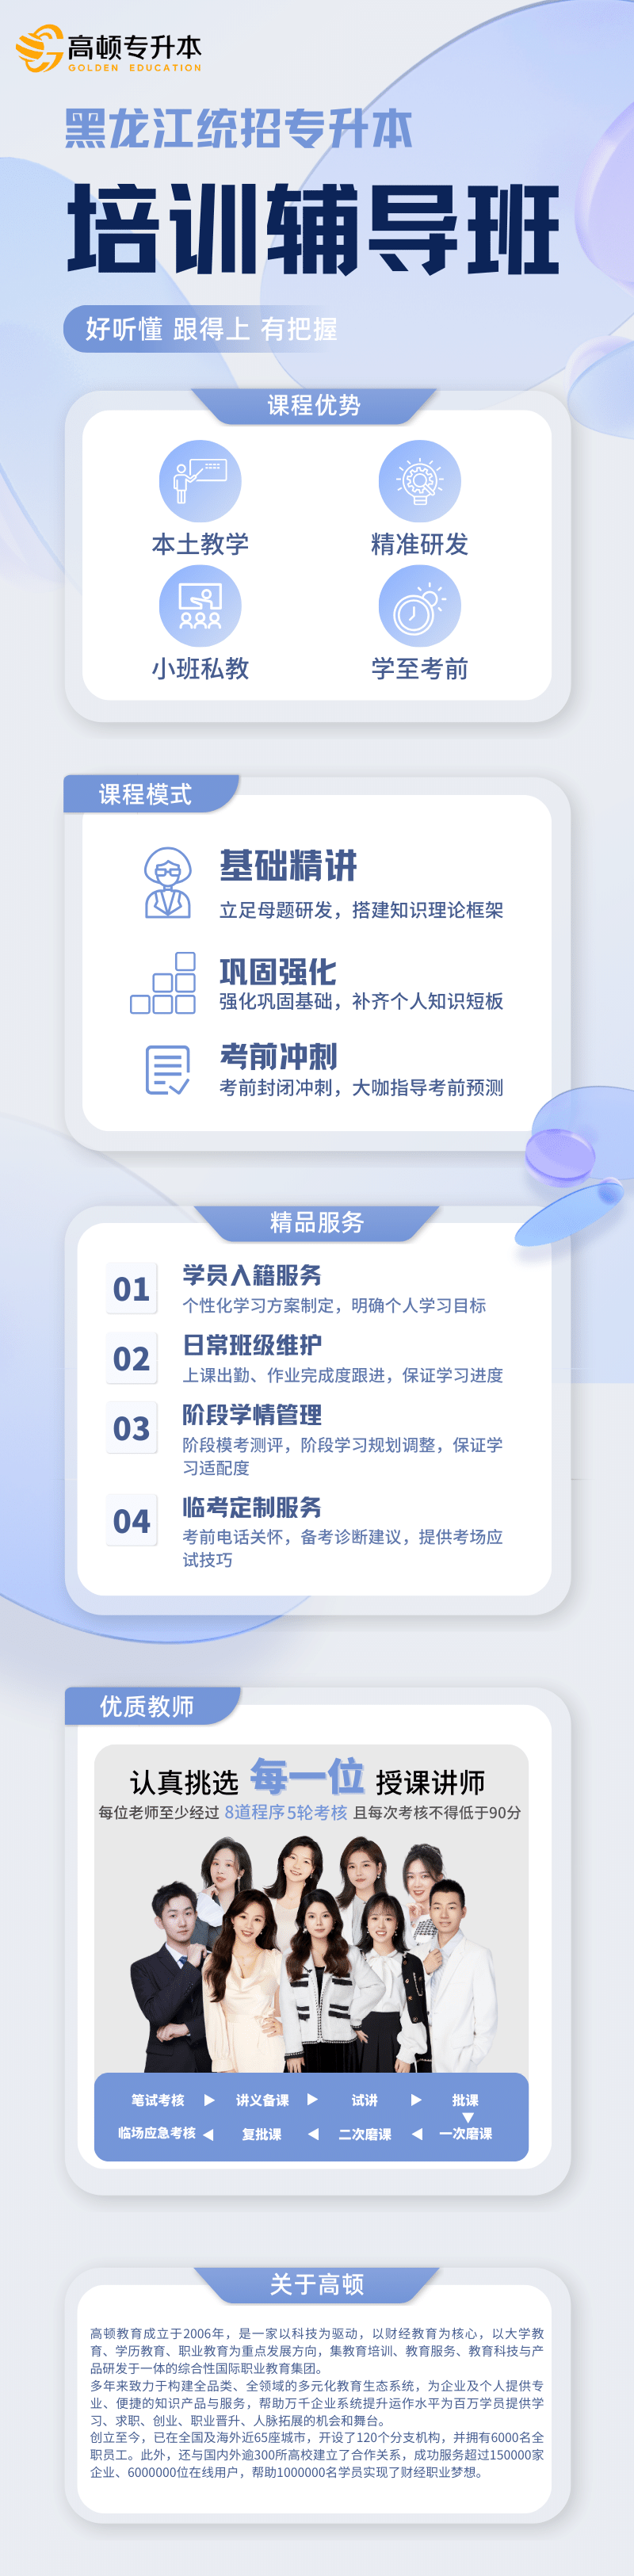 https://simg01.gaodunwangxiao.com/uploadfiles/product-center/202309/14/197b7_20230914120306.png